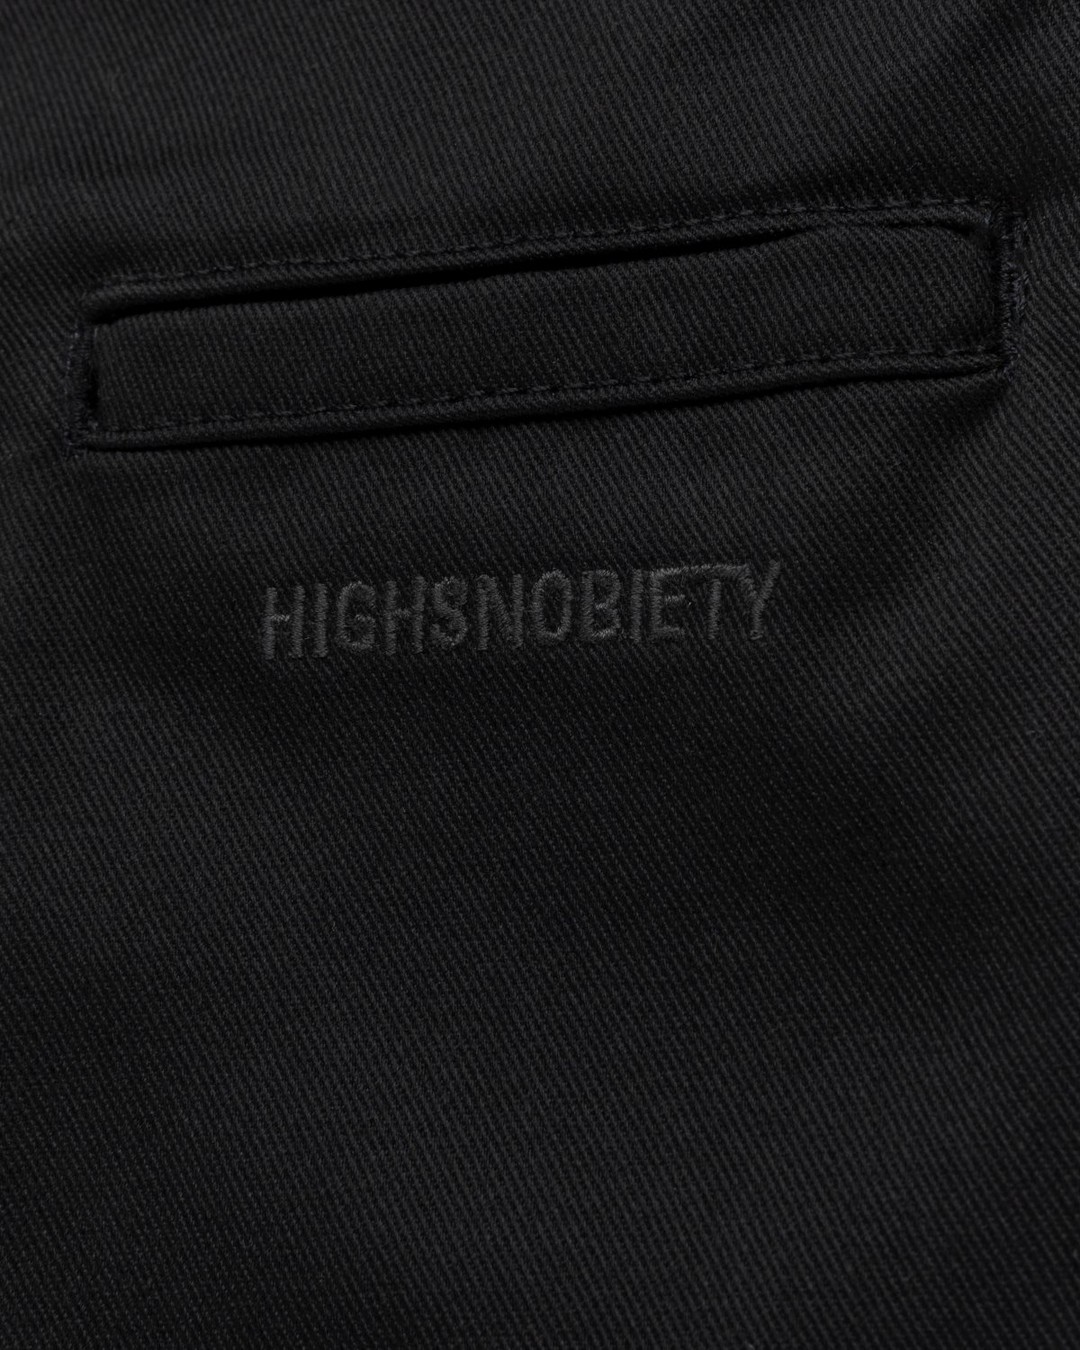 Highsnobiety x Dickies – Pleated Work Pants Black - Work Pants - Black - Image 4